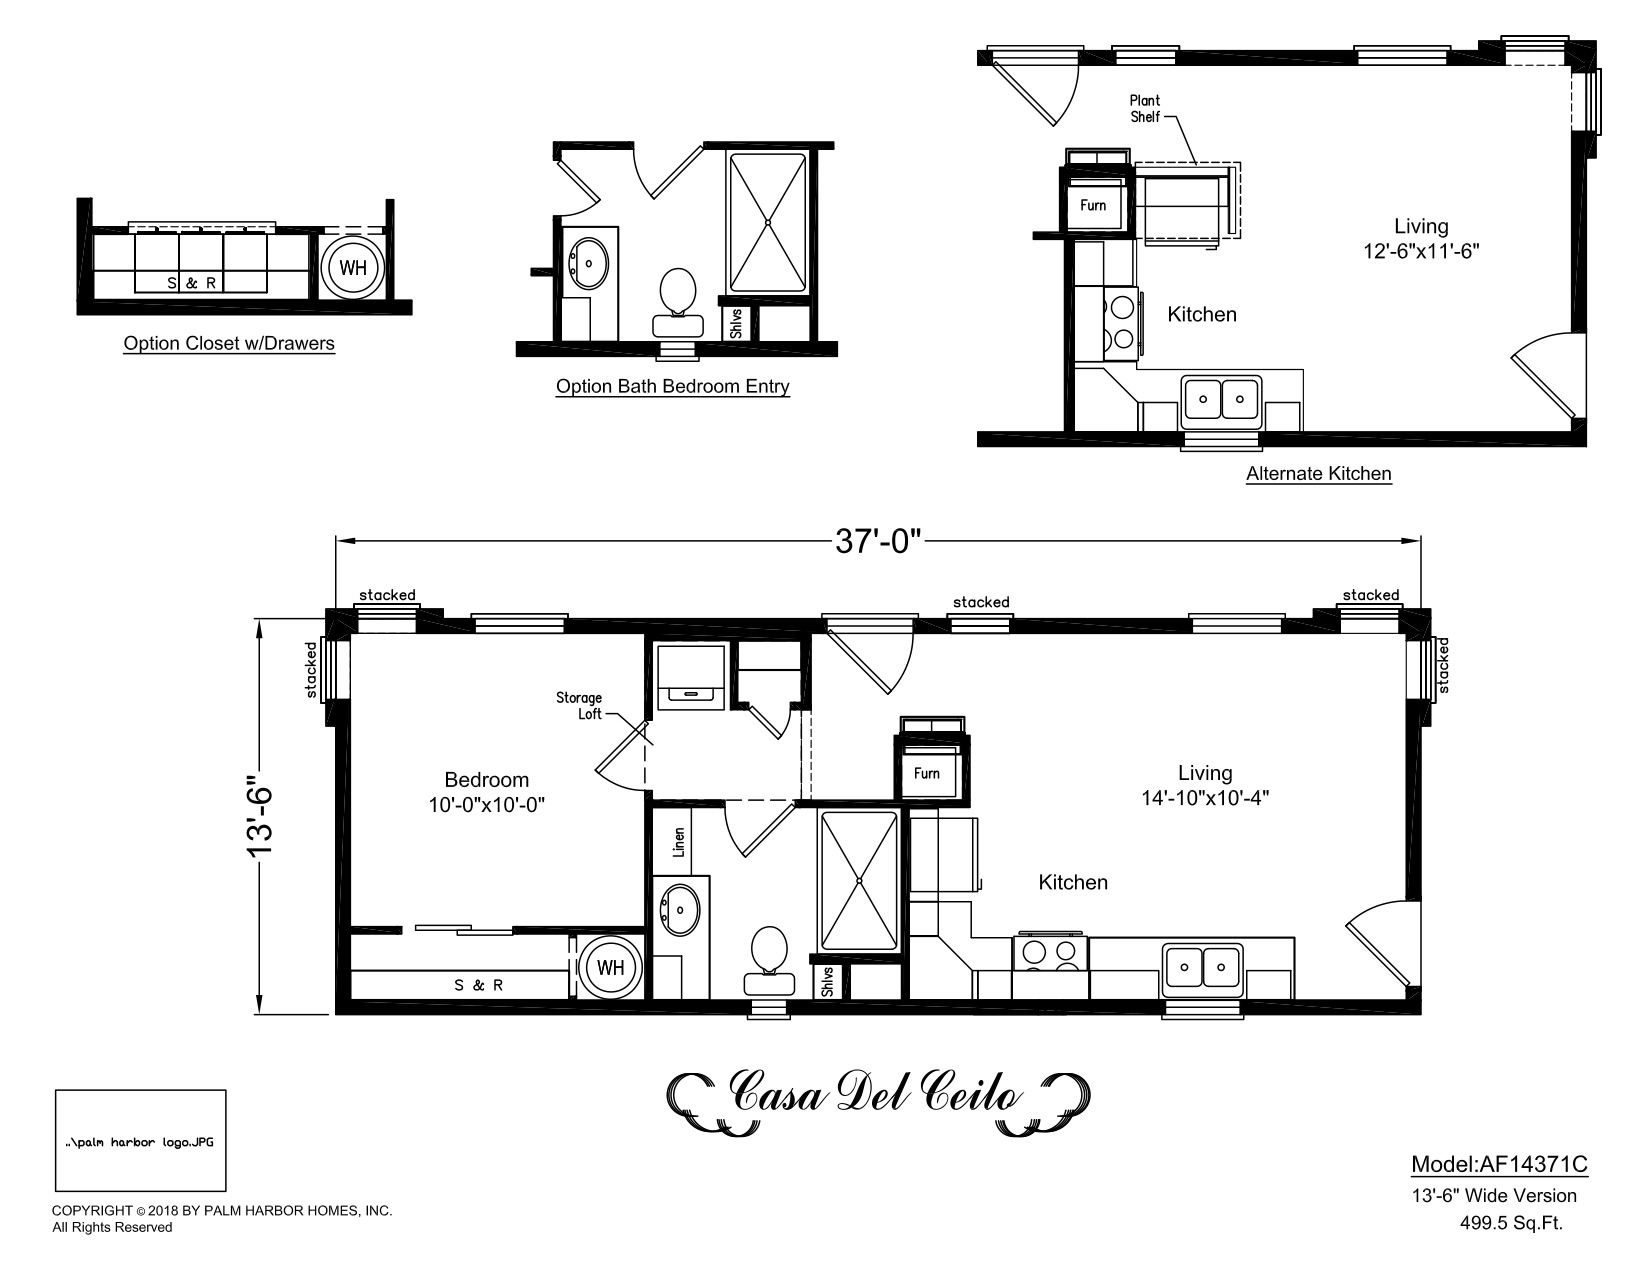 Homes Direct Modular Homes - Model AF14371C - Floorplan